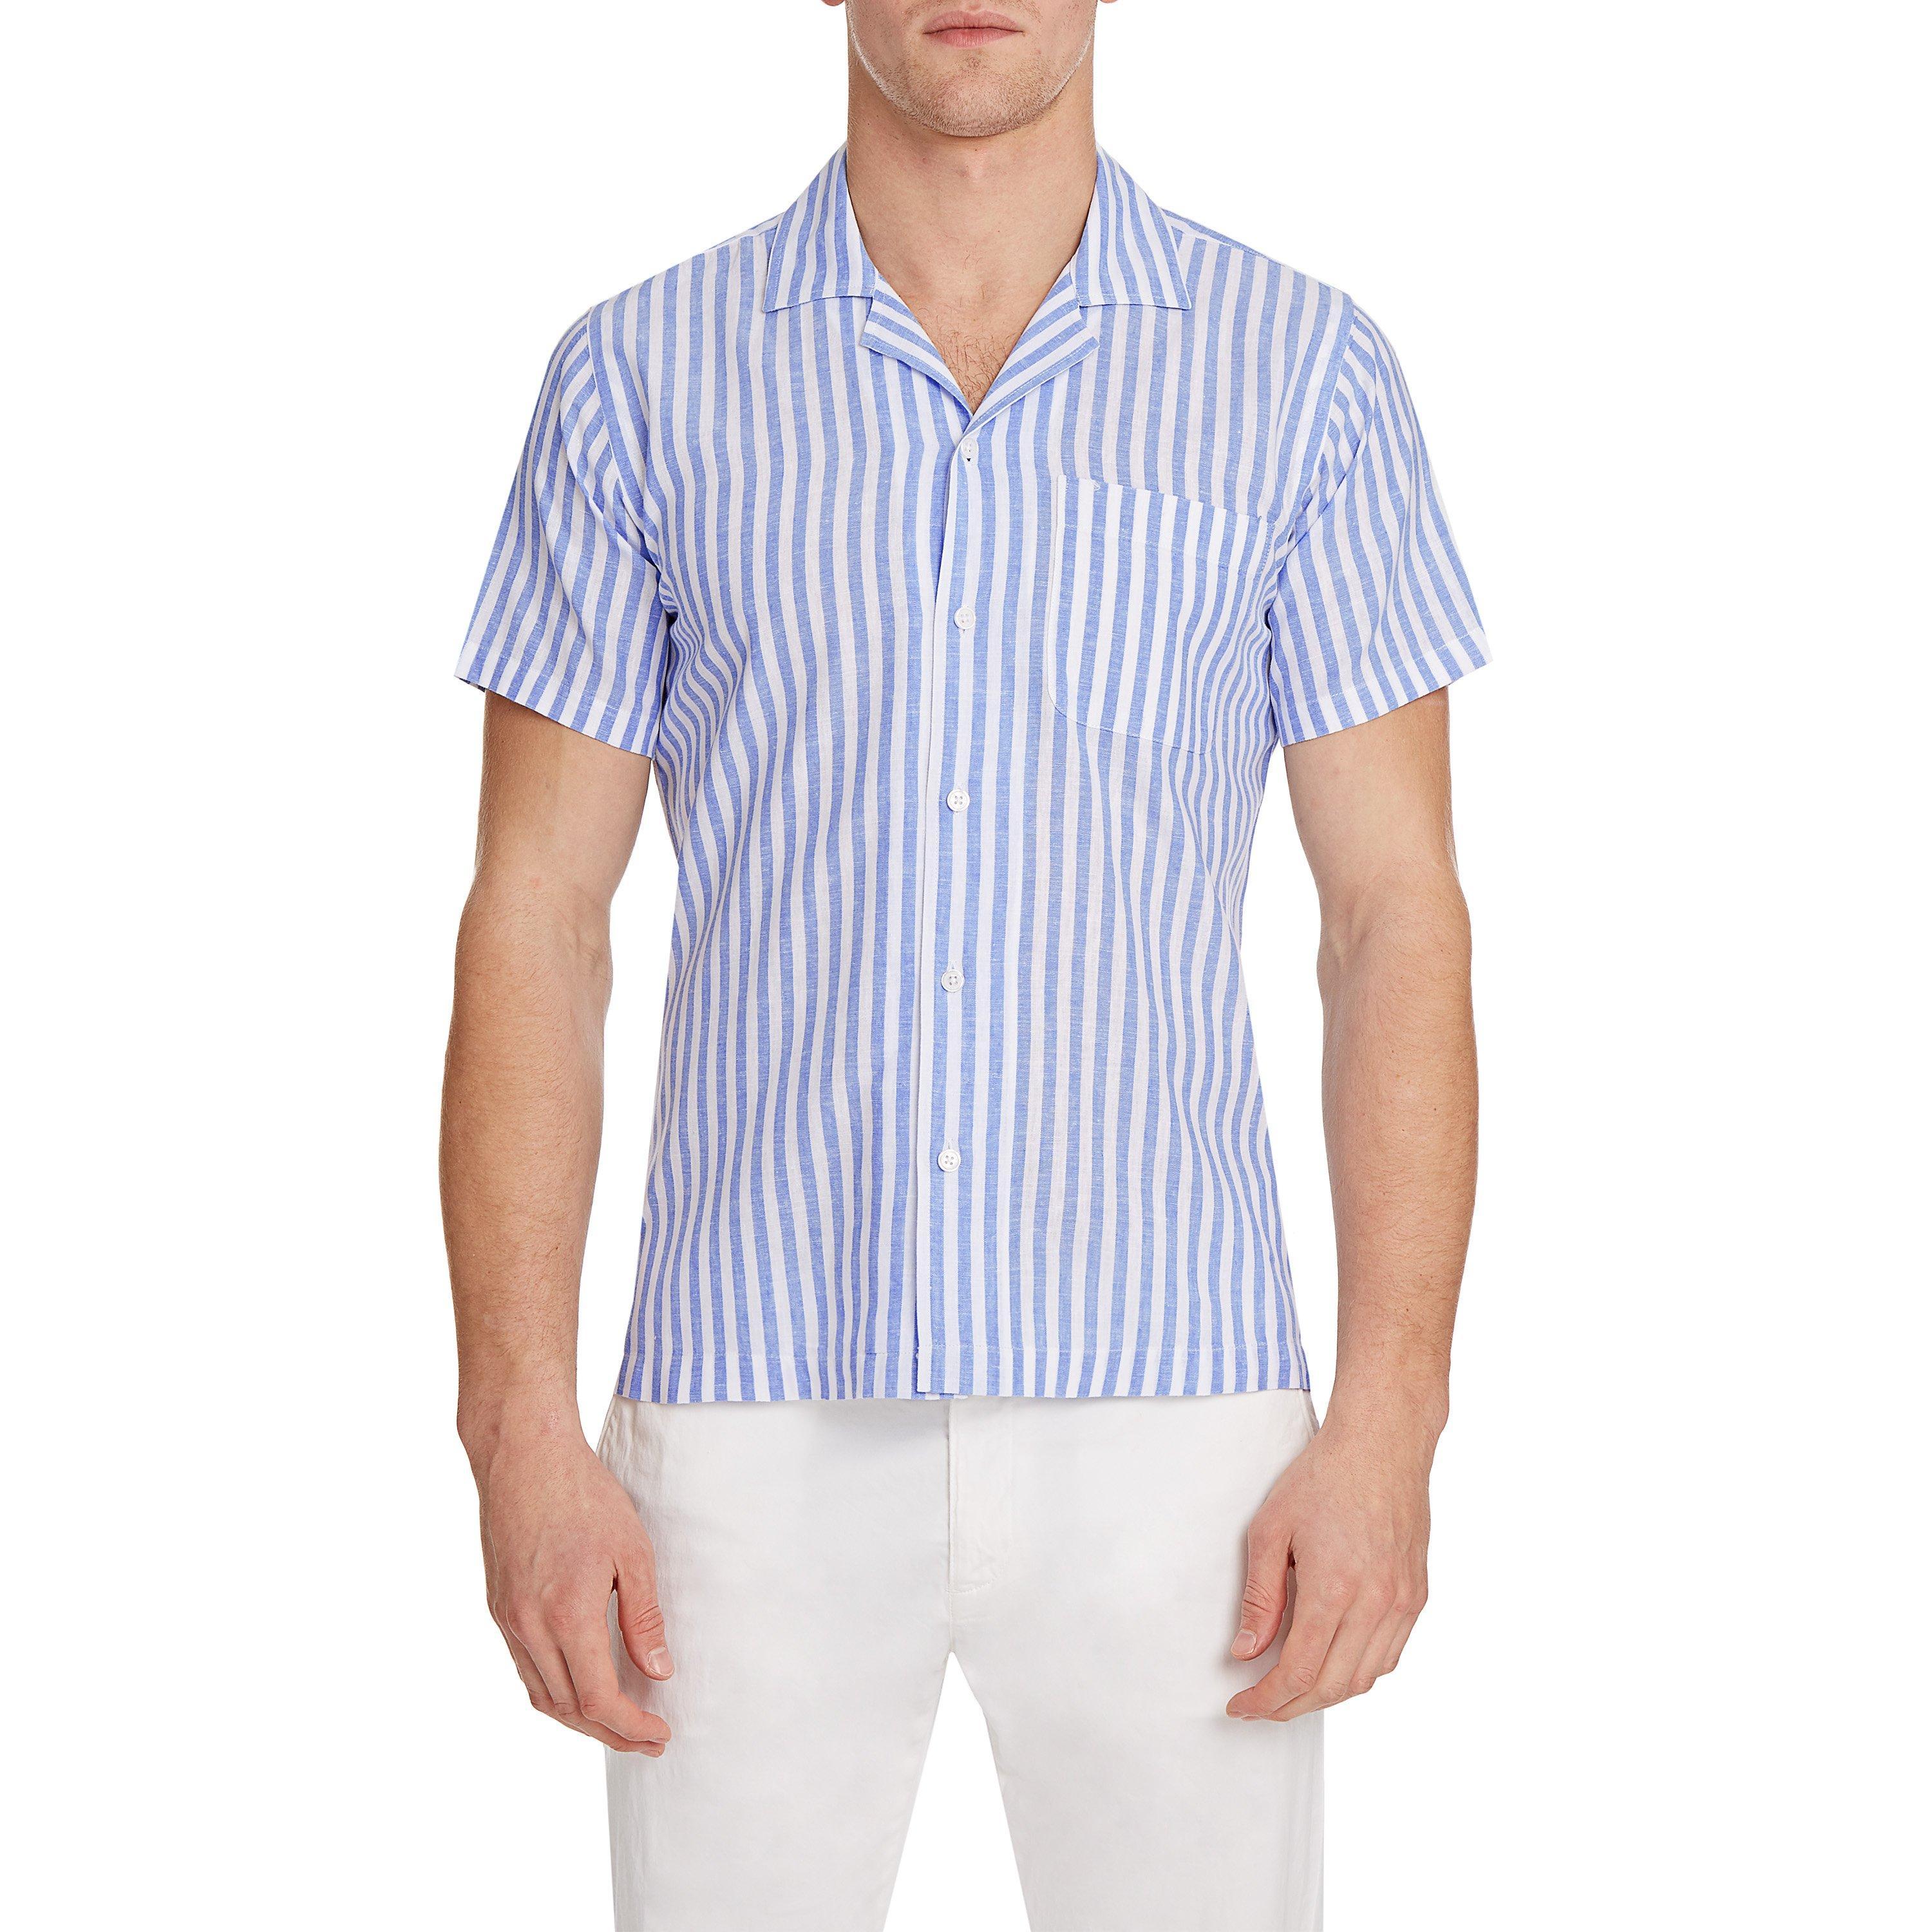 Orlebar Brown Cotton Thunderball Stripe Shirt in White for Men - Lyst